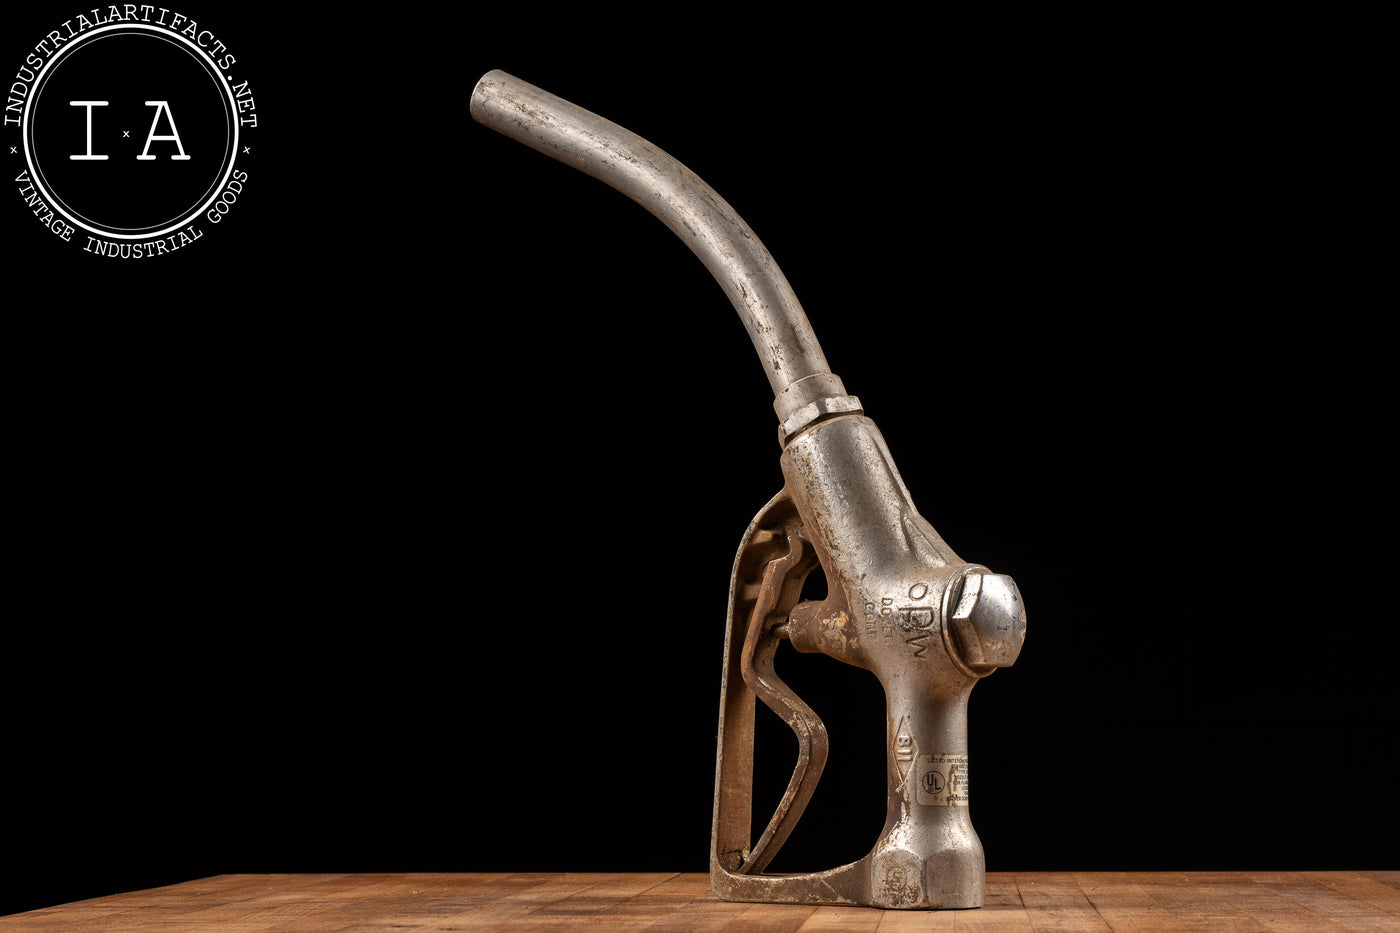 Vintage OPW No. 811 Gas Pump Nozzle – Industrial Artifacts